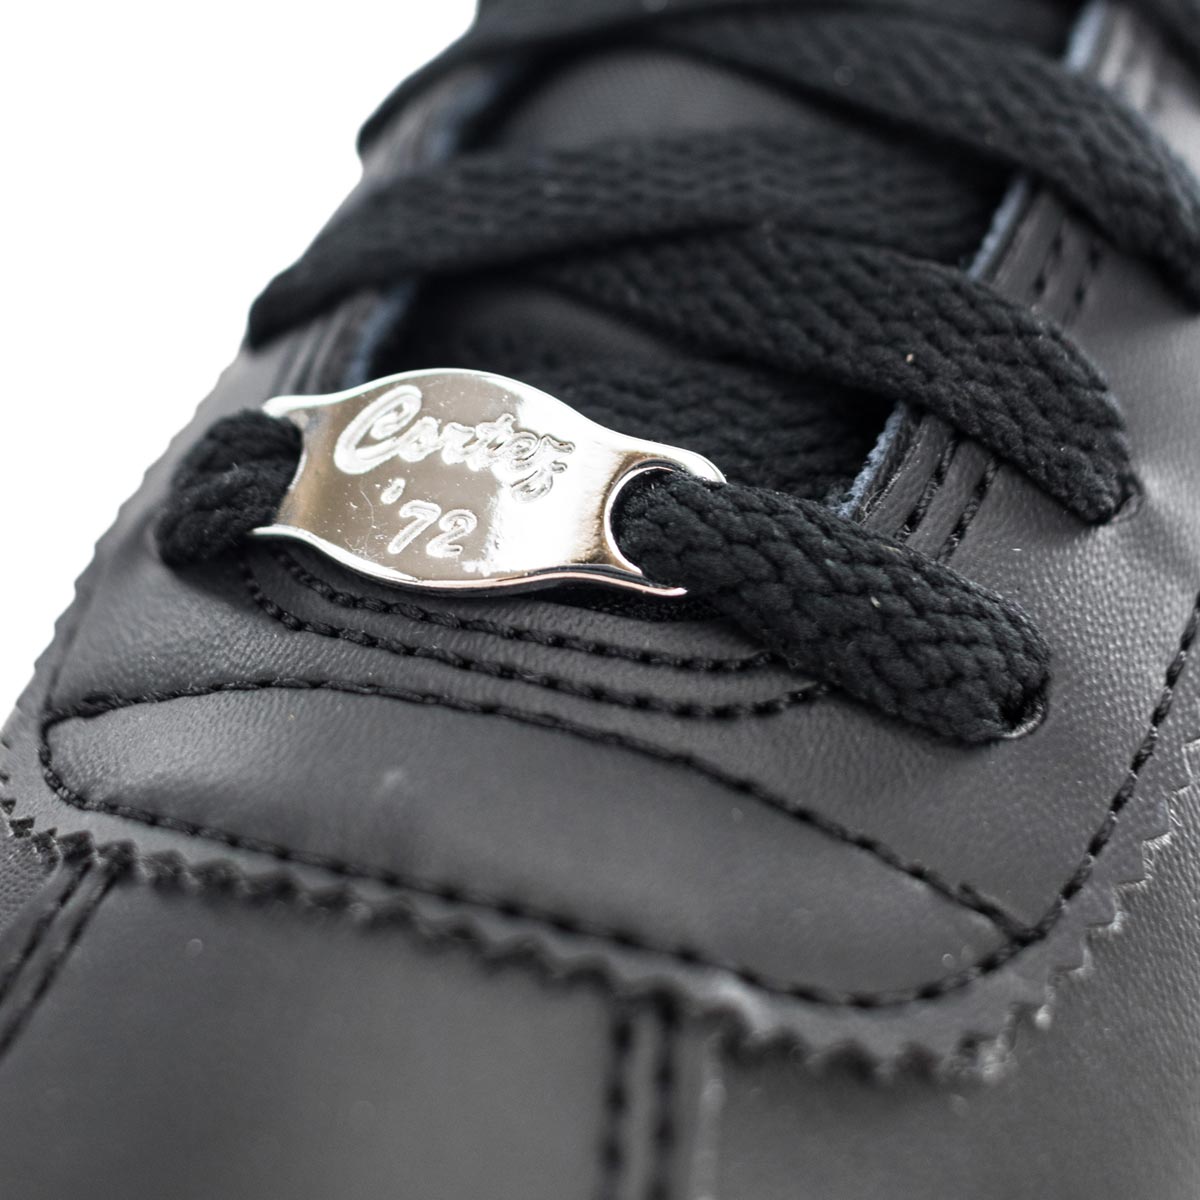 Nike Cortez Basic Leather 819719-012-